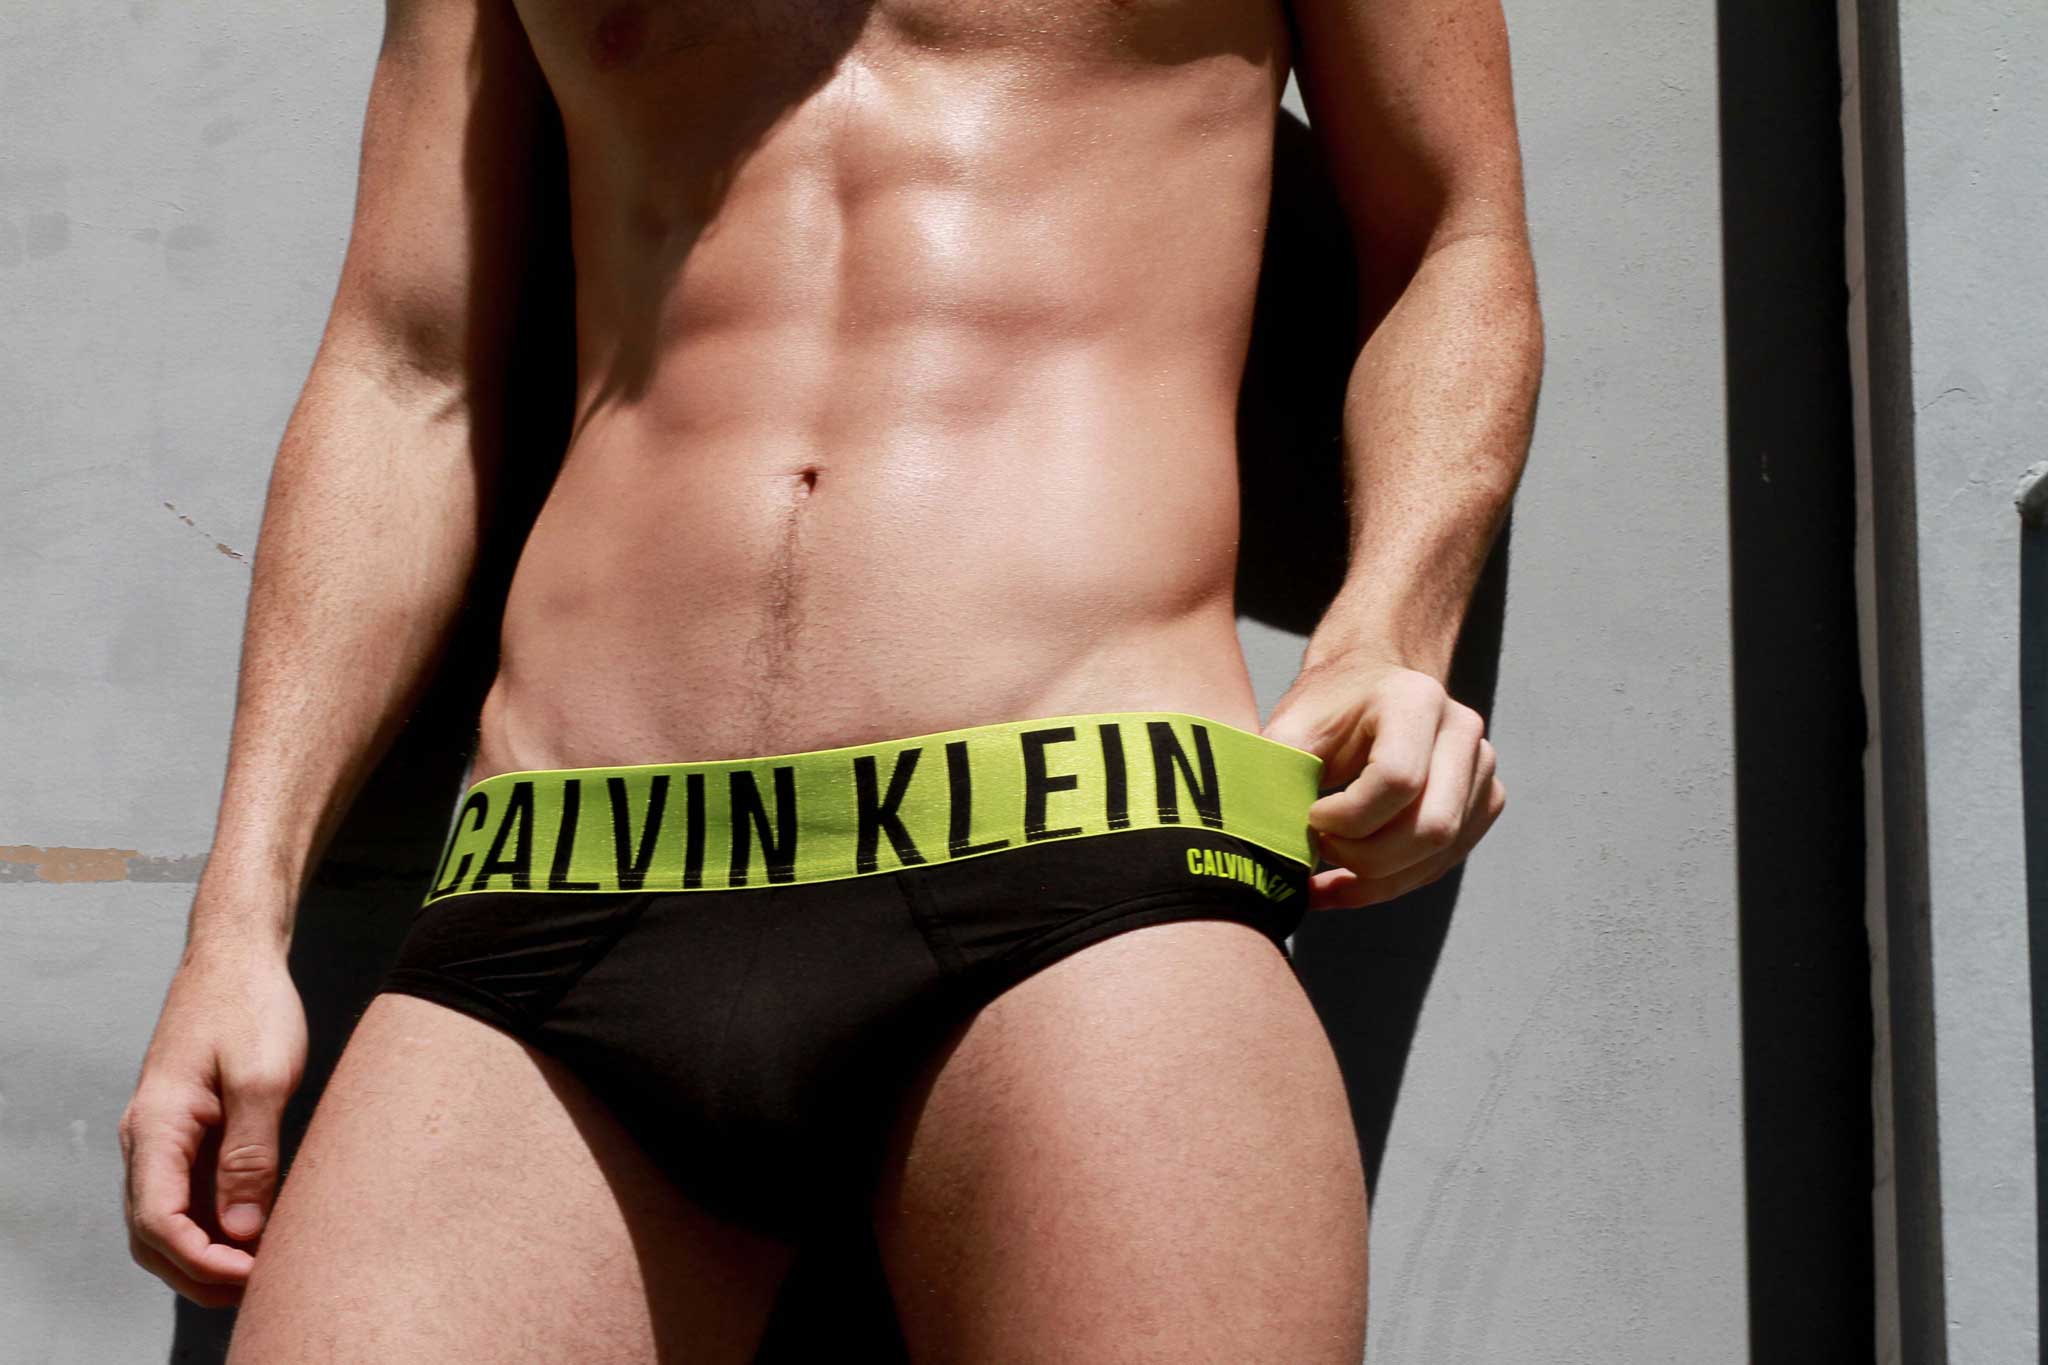 Calvin Klein Briefs For Men